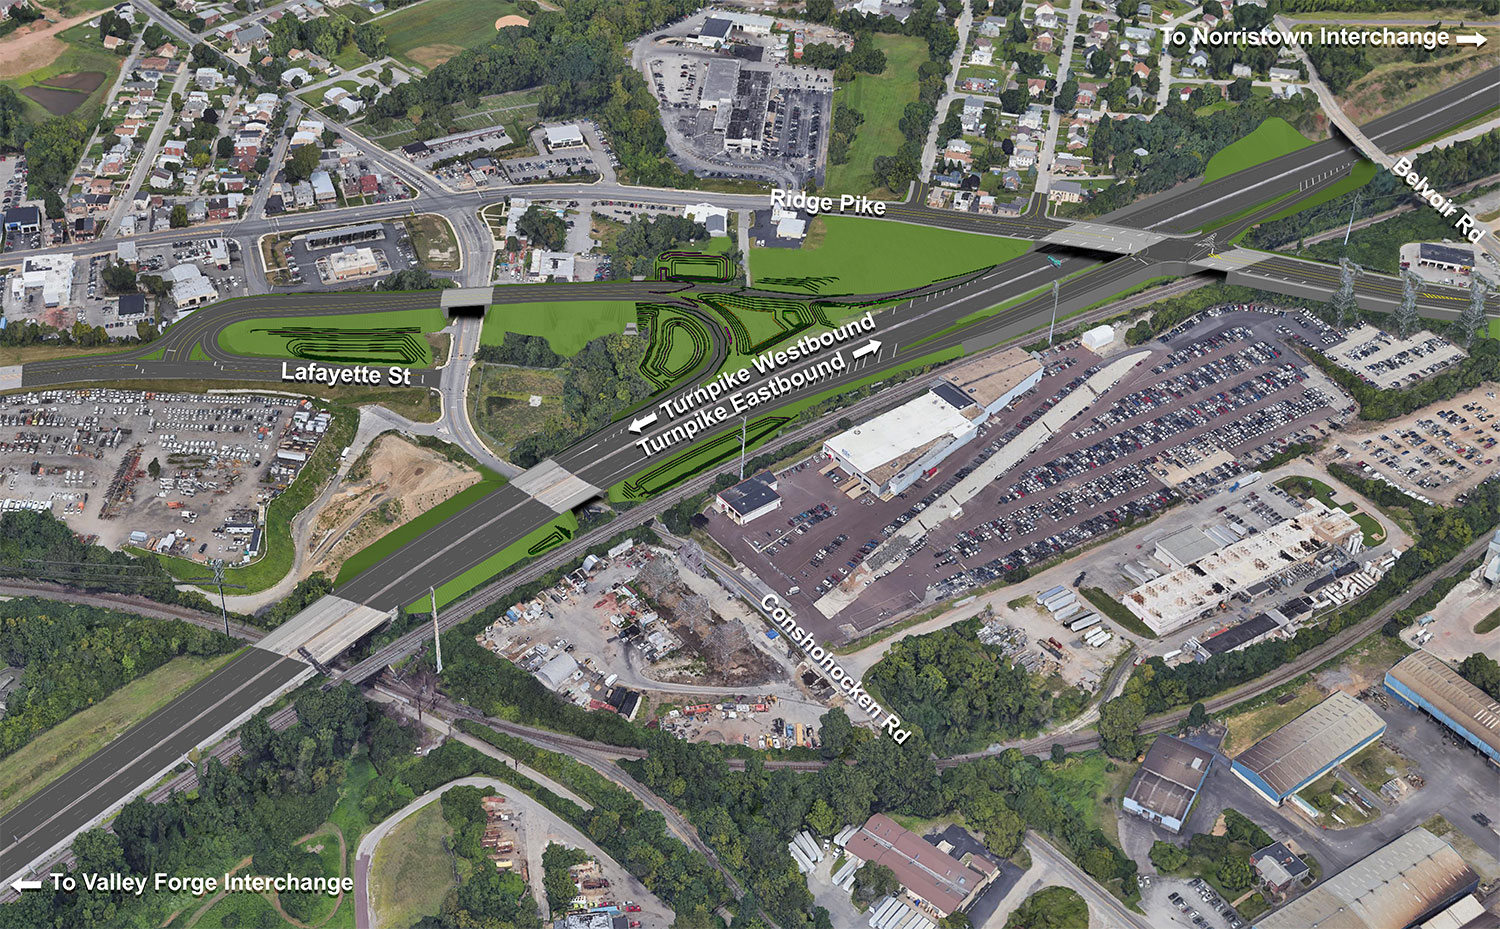 Google Earth View of Lafayette Street Interchange Project